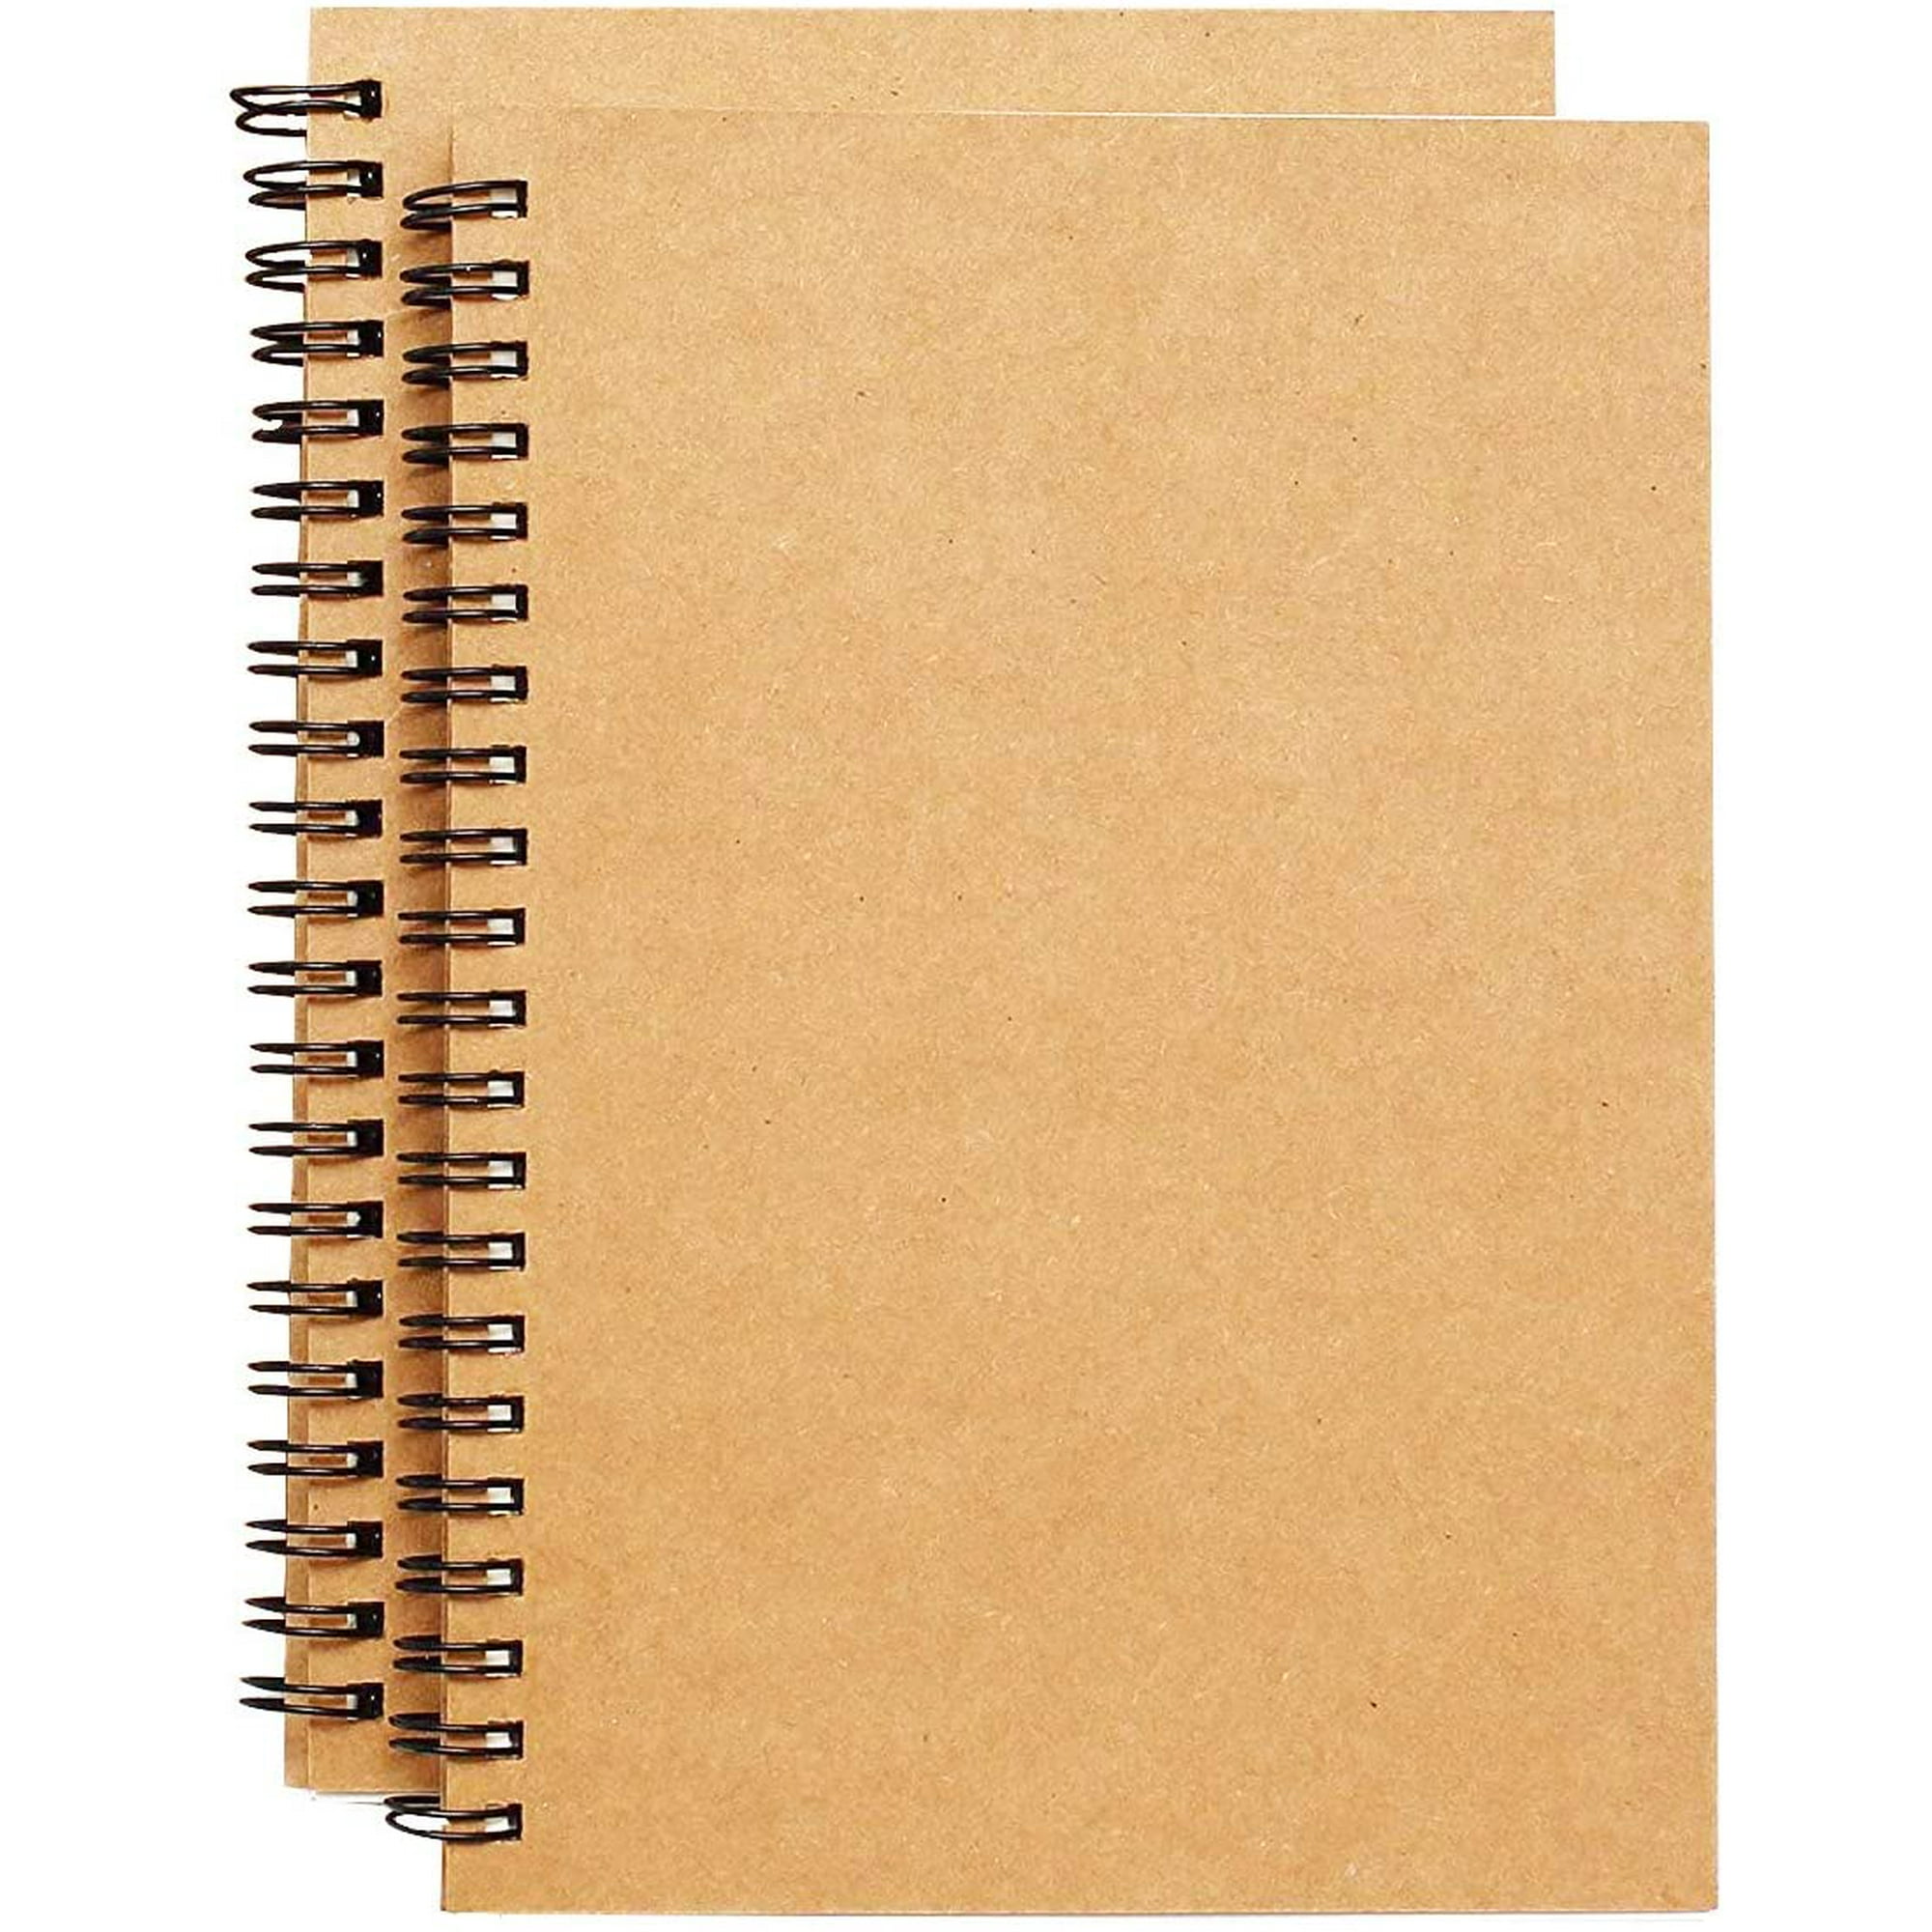 Cuaderno de espiral kraft con páginas negras 24 x 19 x 1,5 cm